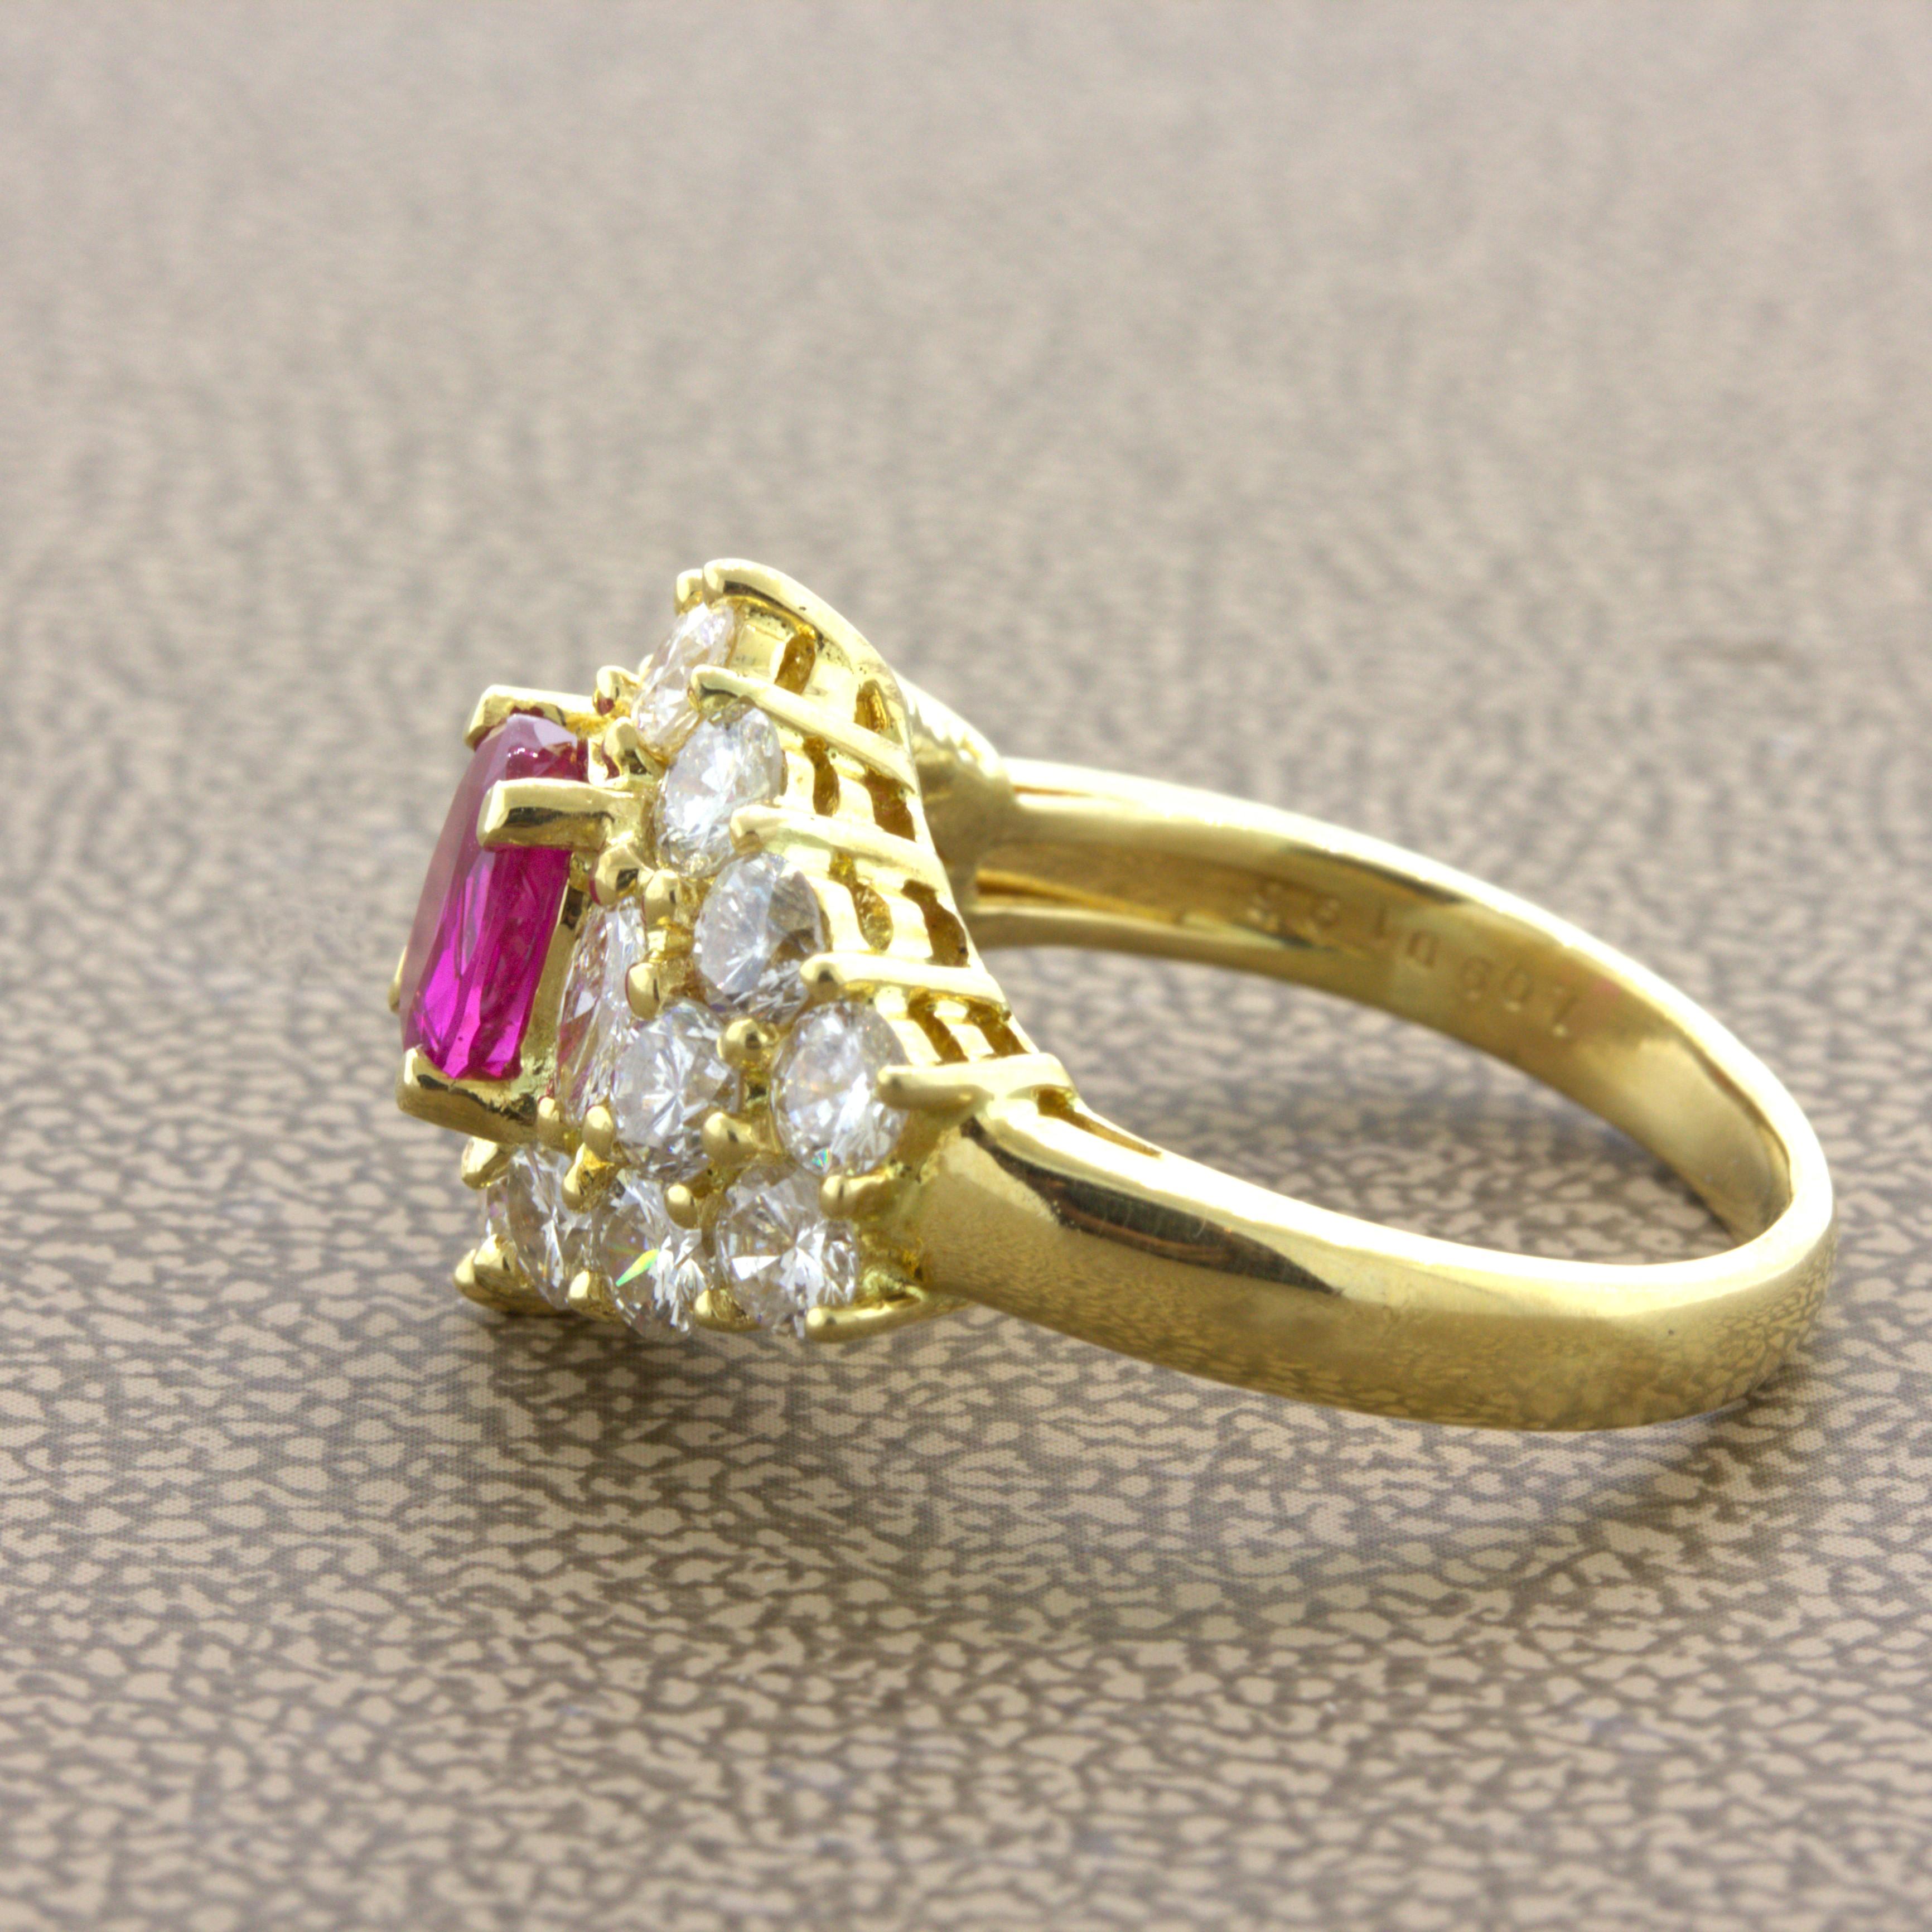 Women's 1.09 Carat Burma No-Heat Ruby Diamond 18K Yellow Gold Ring, GIA Certified For Sale